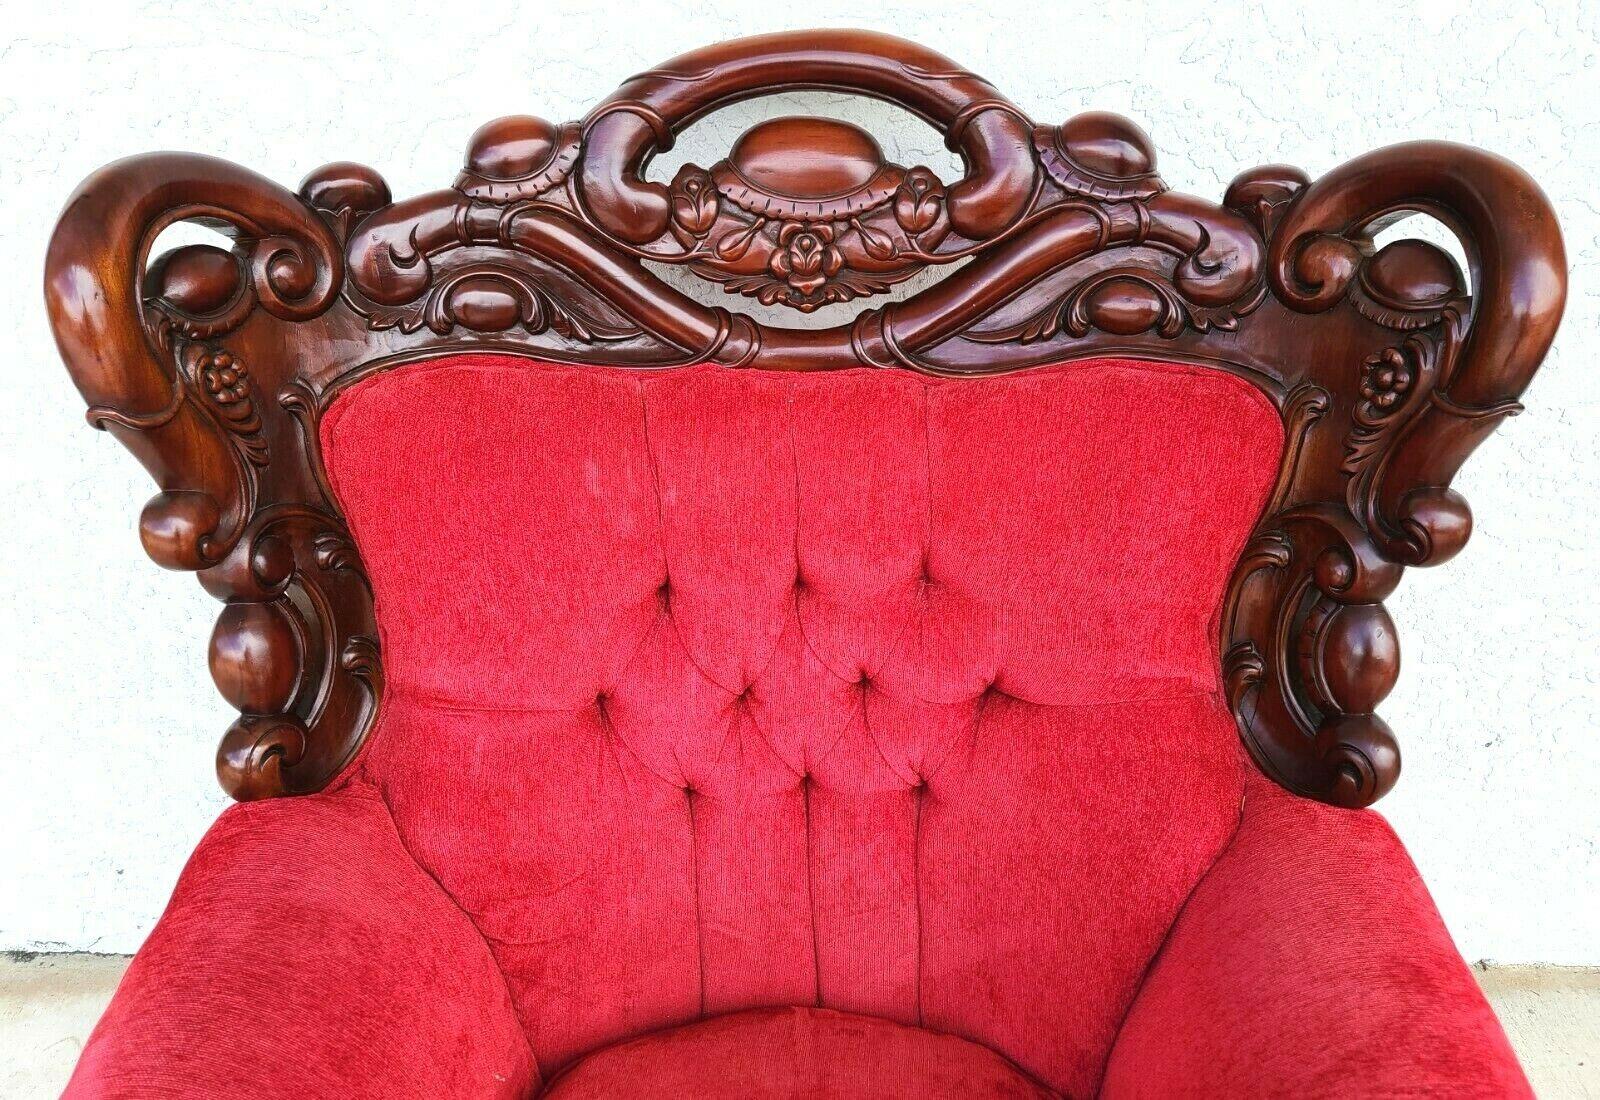 Coton Grand fauteuil en bois de rose sculpté de style chinoiserie asiatique en vente